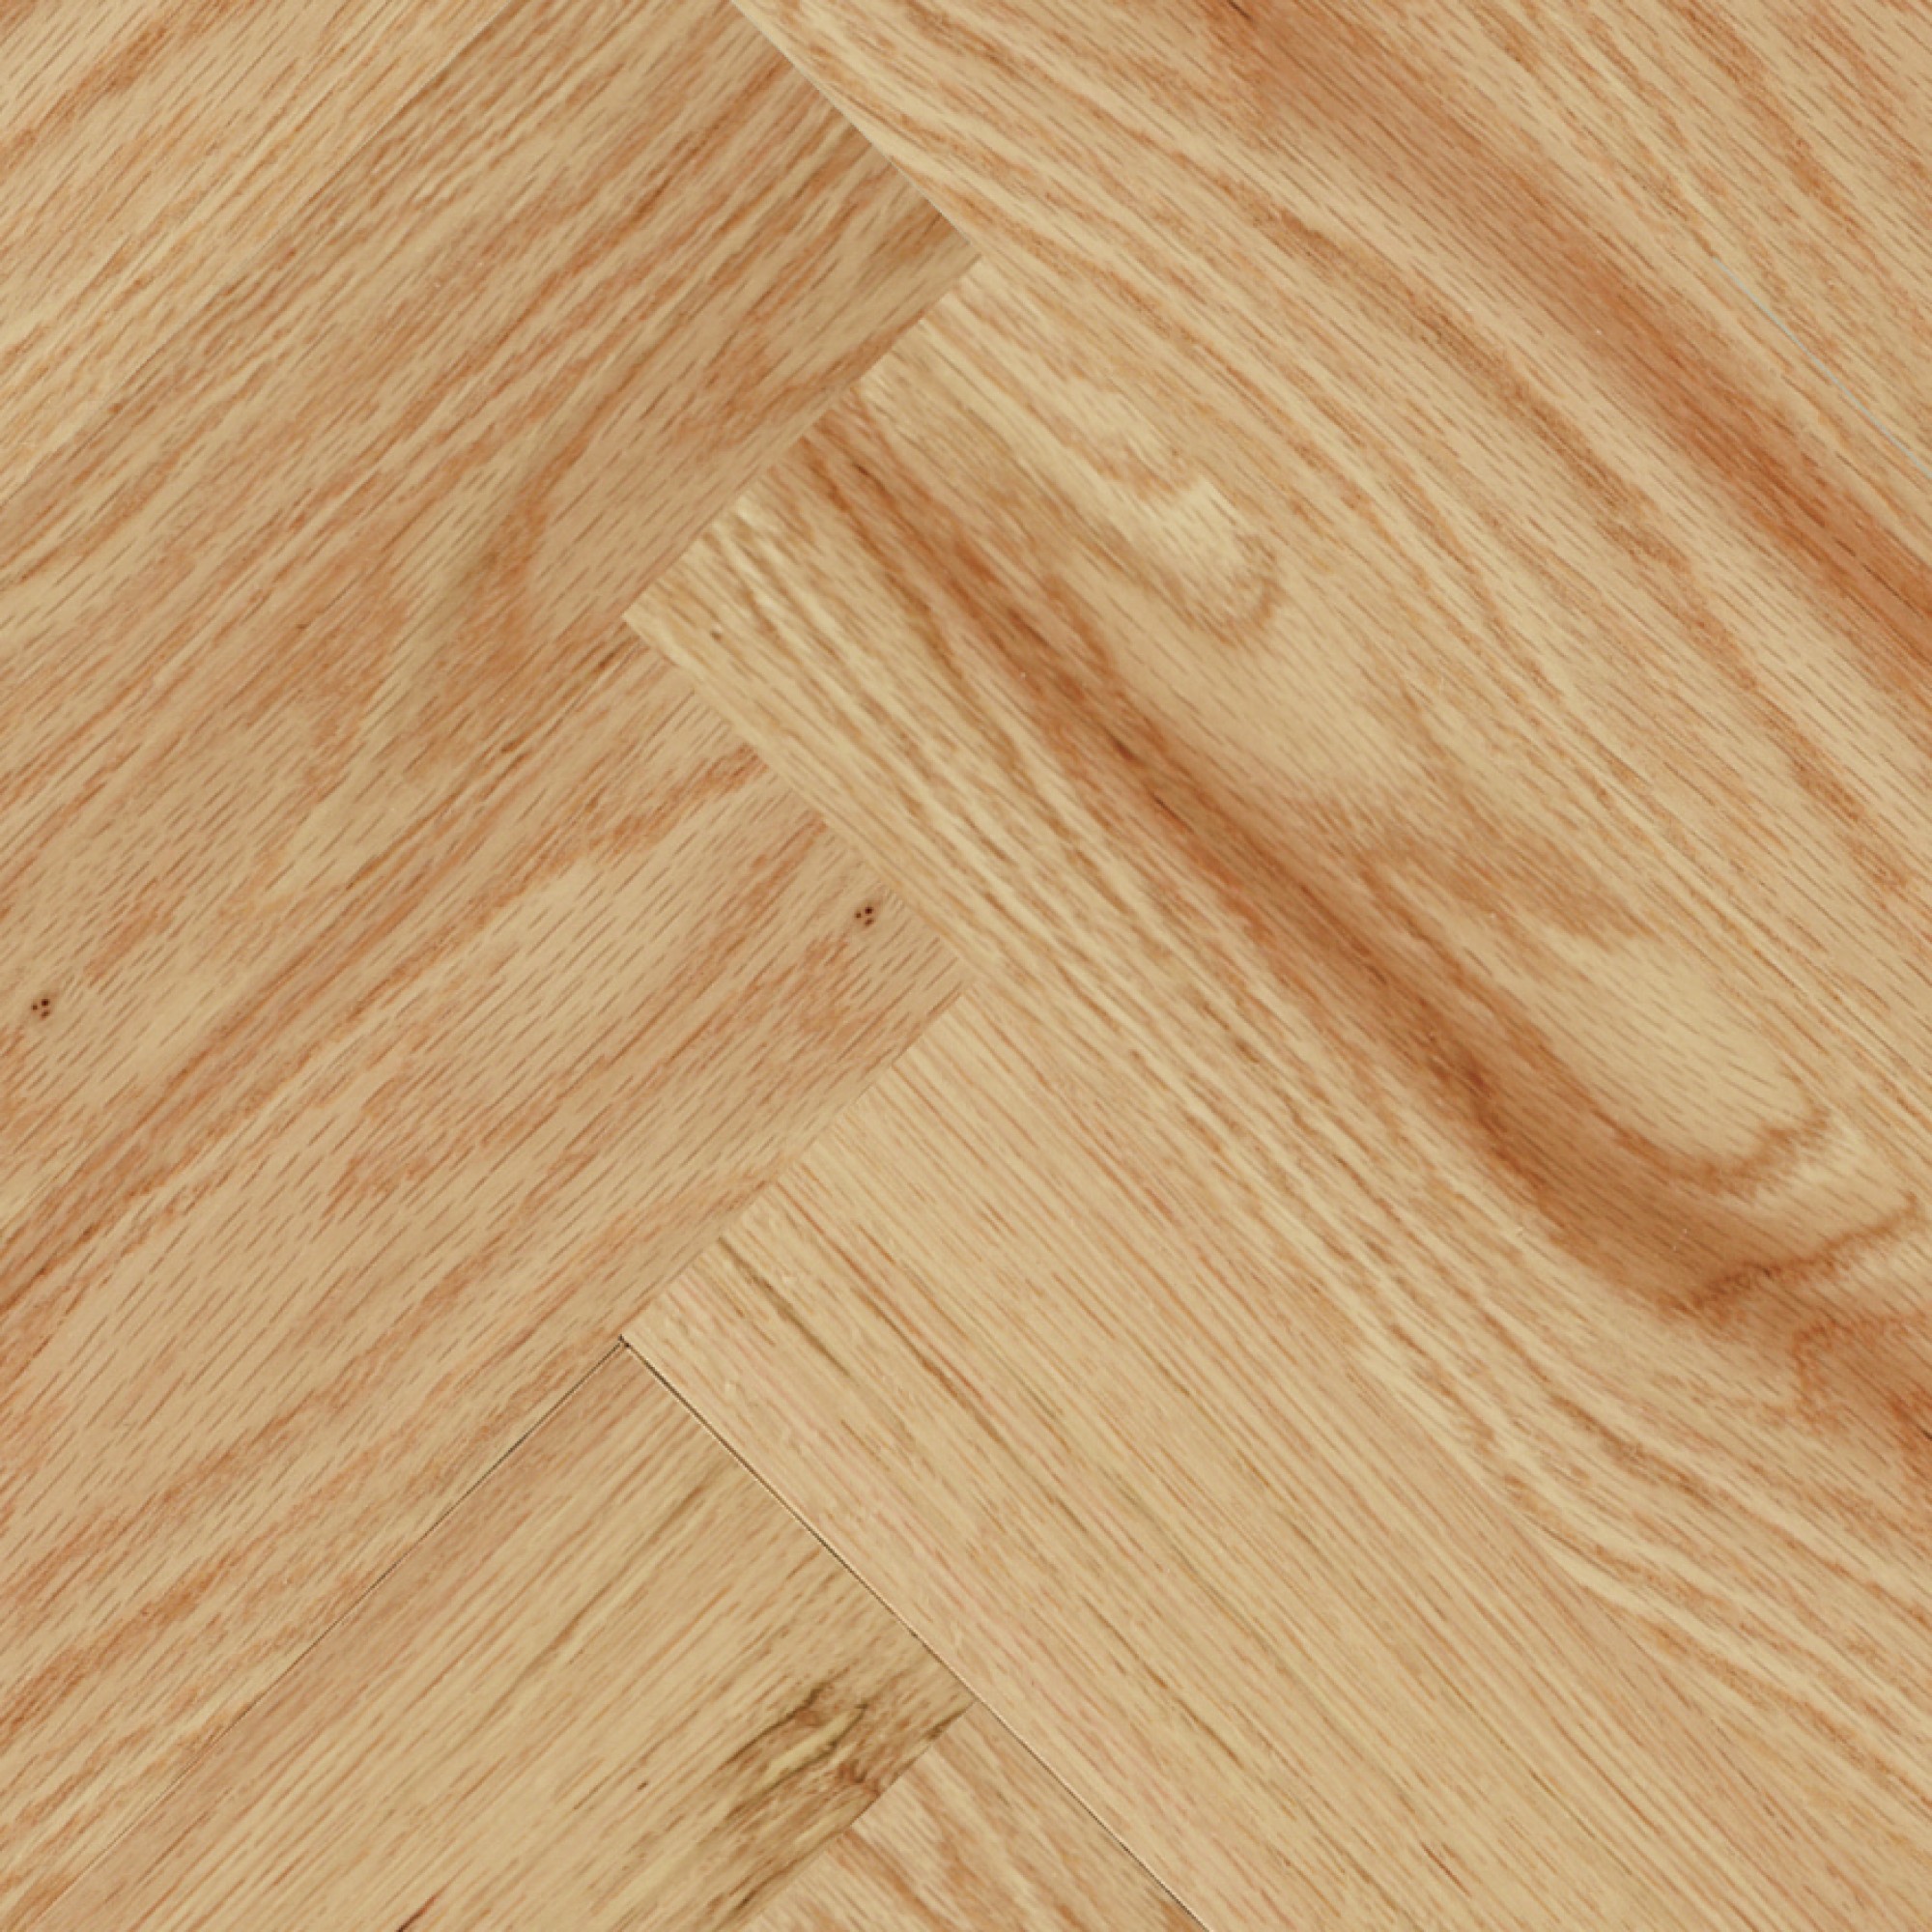 13 Aesthetic Hardwood flooring evans ave etobicoke for Renovation